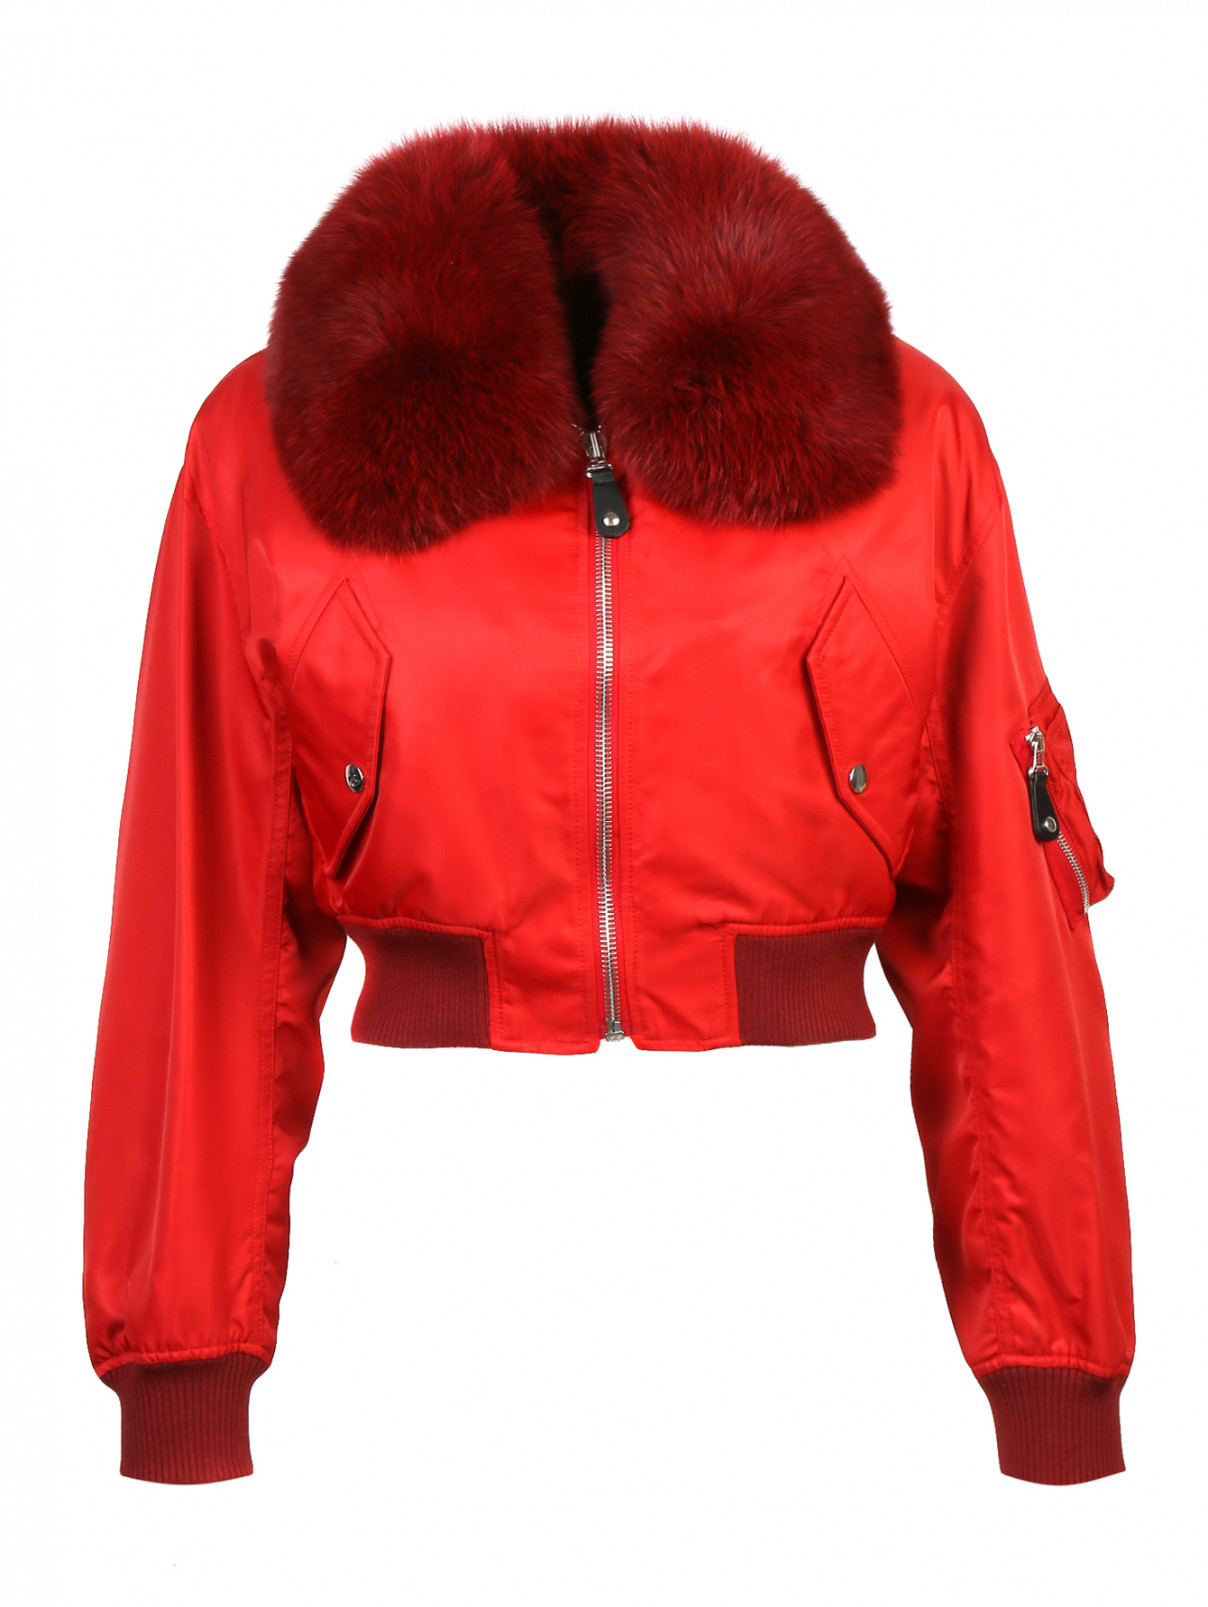 Укороченная куртка на молнии на подкладе из меха кролика с мехом лисы на воротнике Yves Salomon  –  Общий вид  – Цвет:  Красный